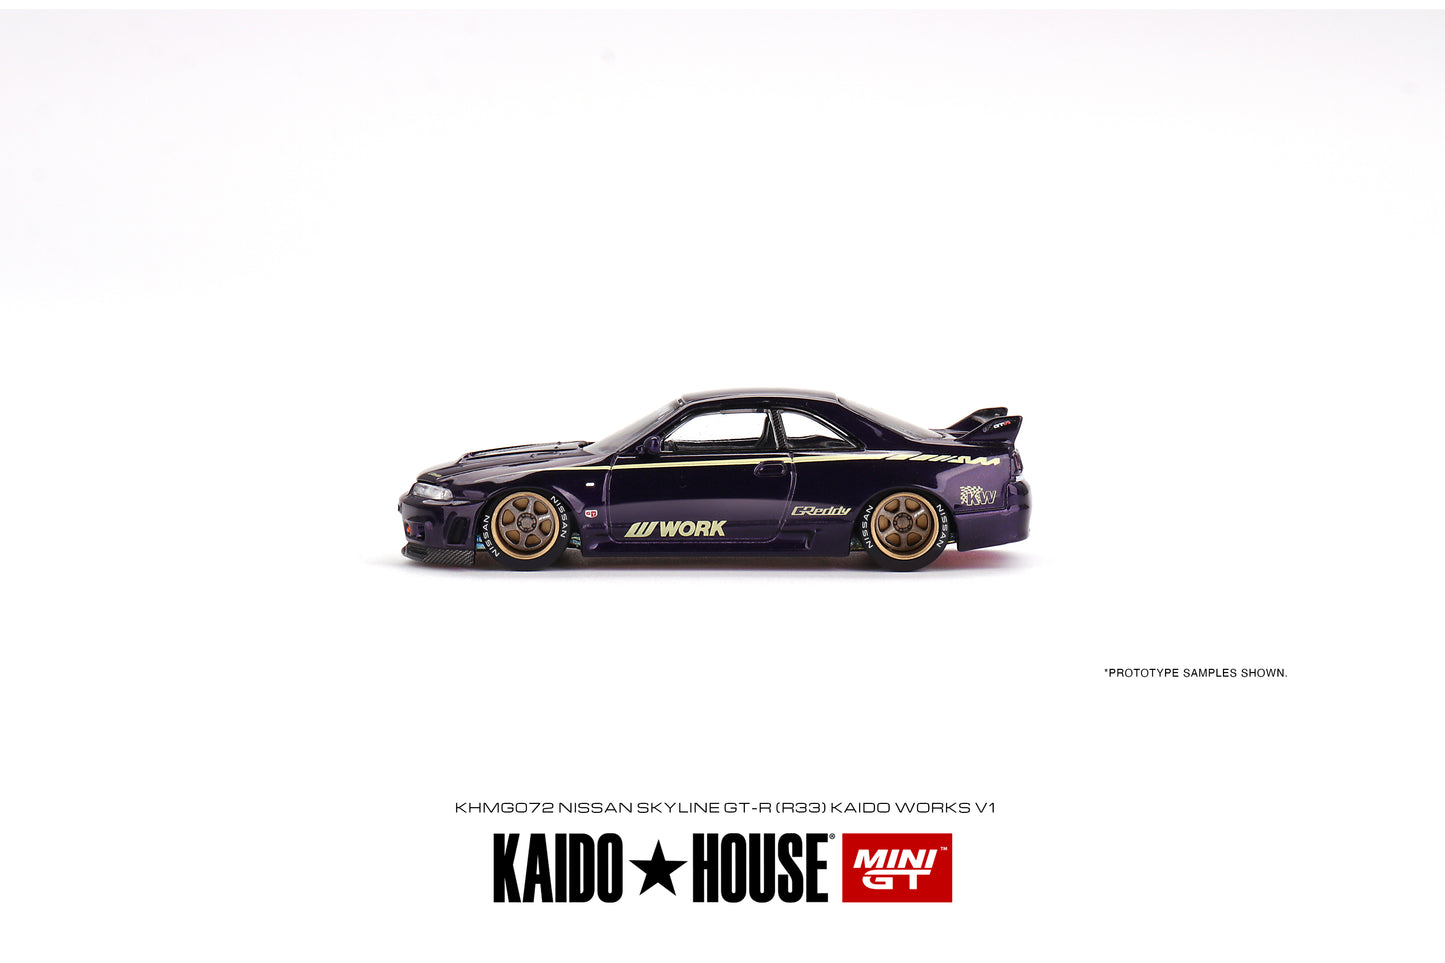 Mini GT x Kaido House 1:64 Nissan GT-R R33 Kaido Works V1 Purple - KHMG072